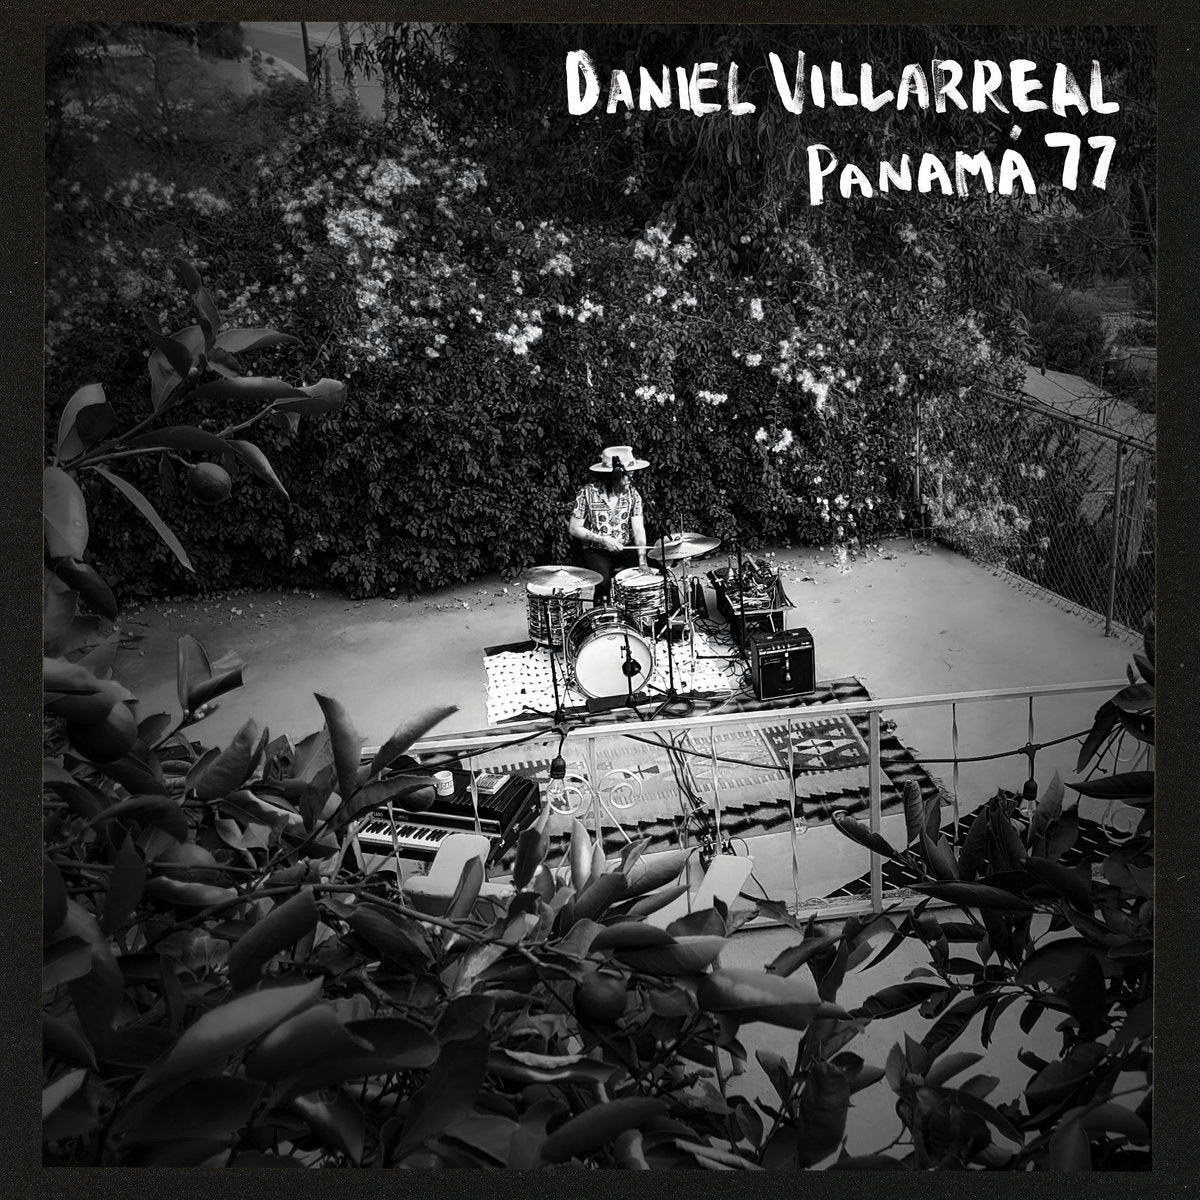 DANIEL VILLARREAL - PANAMA 77 Vinyl LP